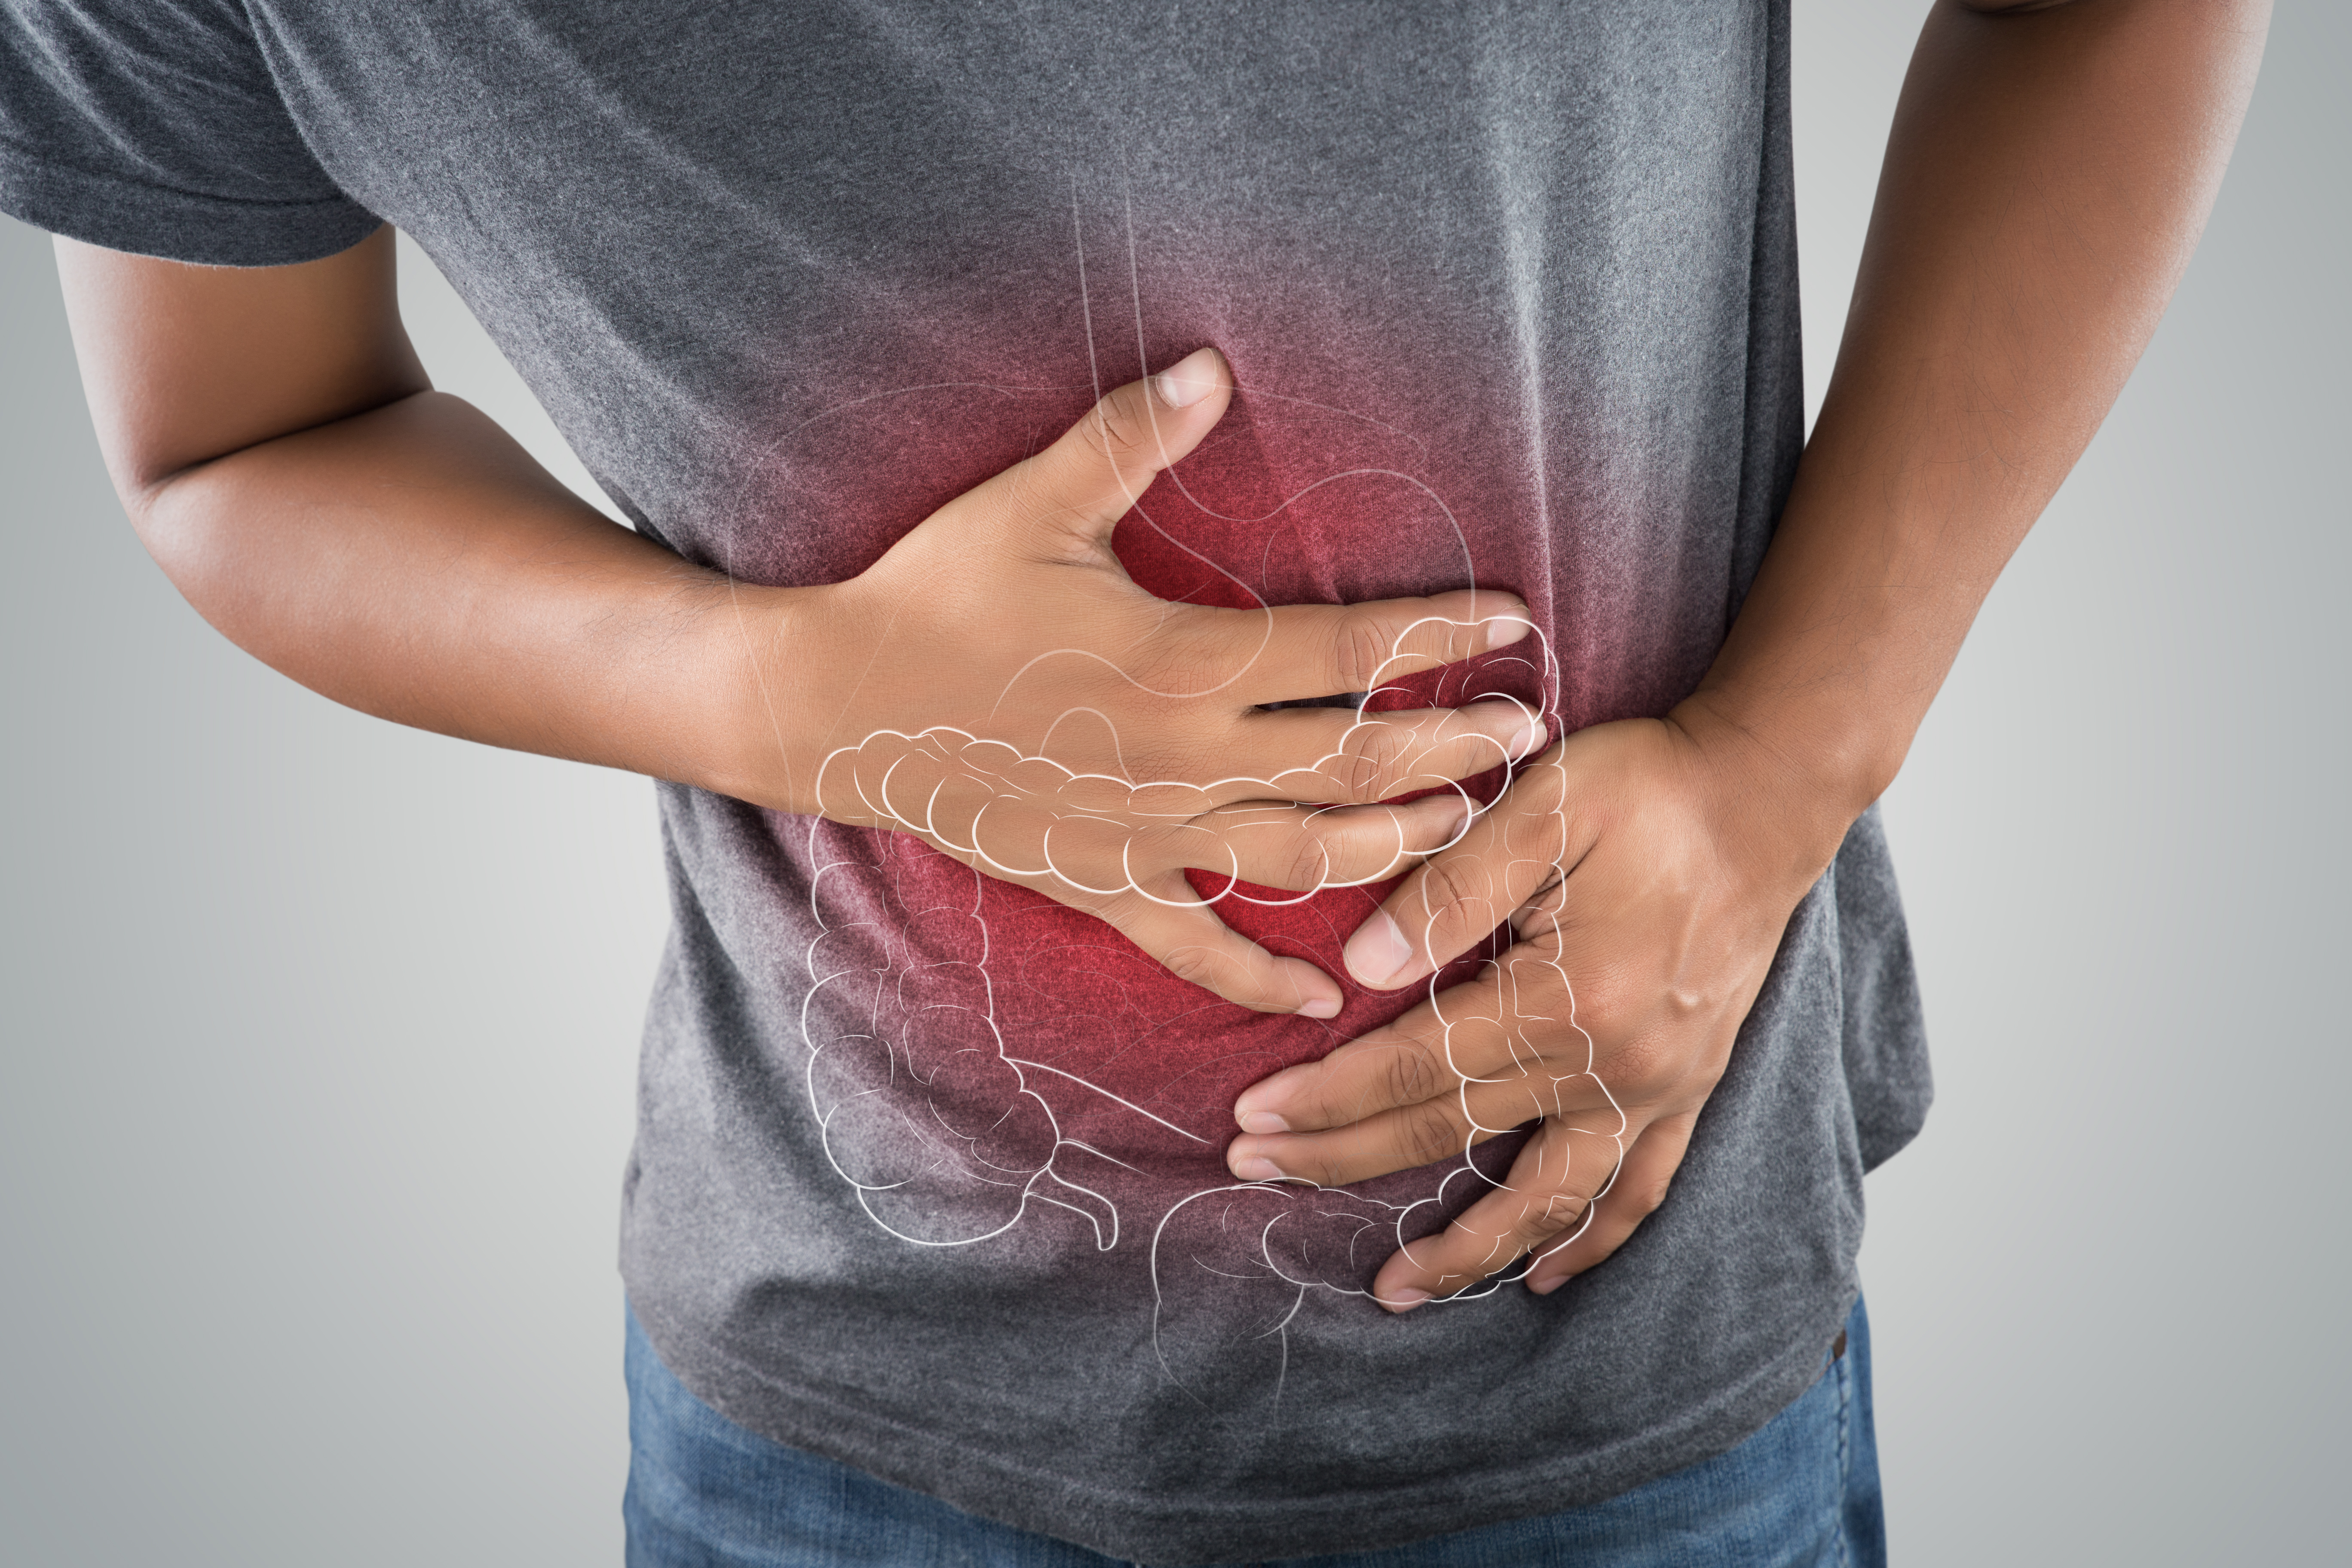 La salud intestinal es importante y requiere de estar atentos a cualquier cambio.  (Foto Prensa Libre: Shutterstock)